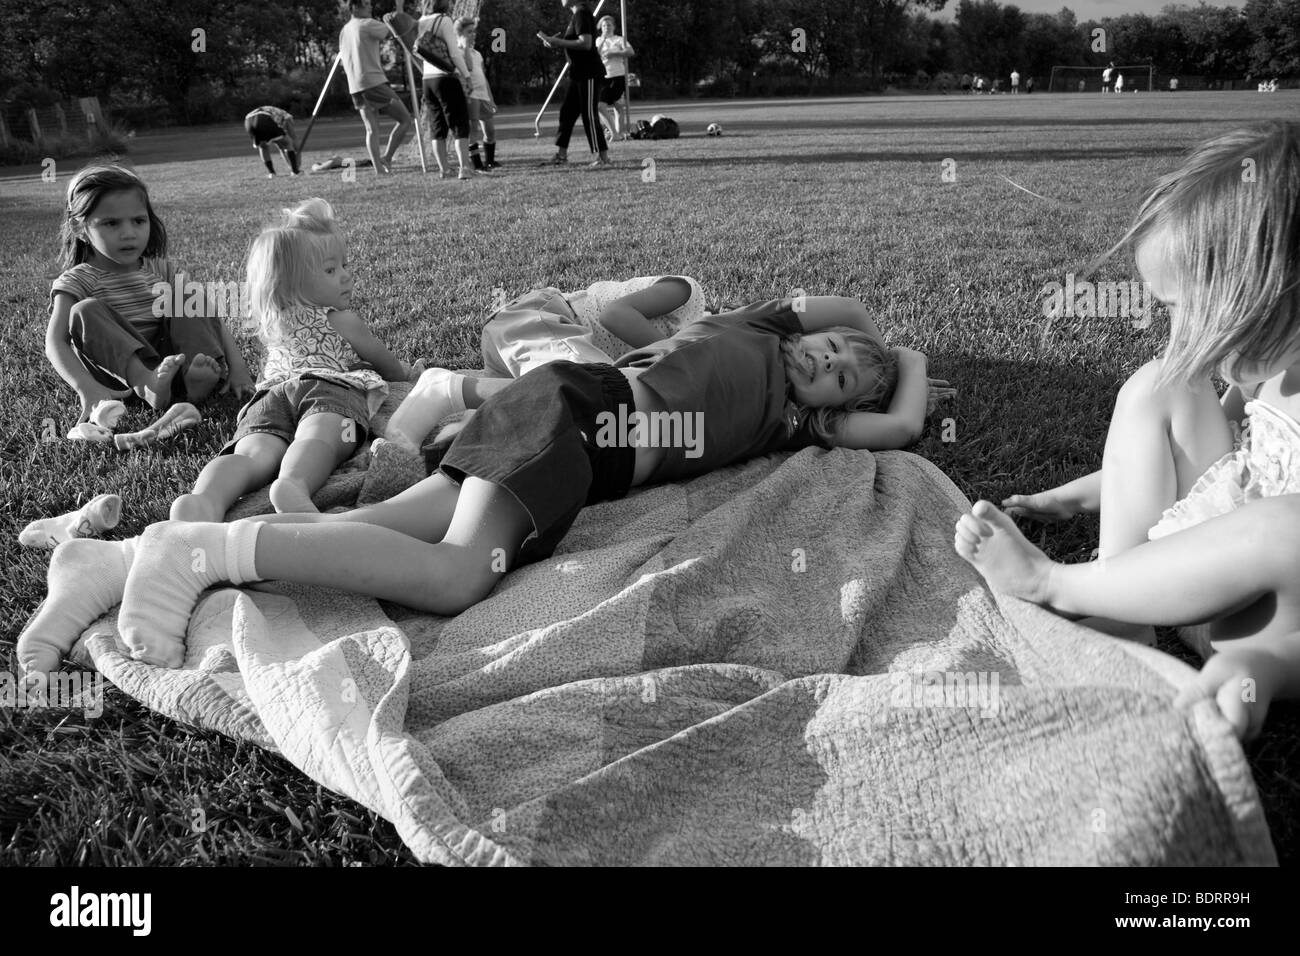 Schwarz / weiß Bild von Mädchen entspannen am Fußballplatz Stockfoto